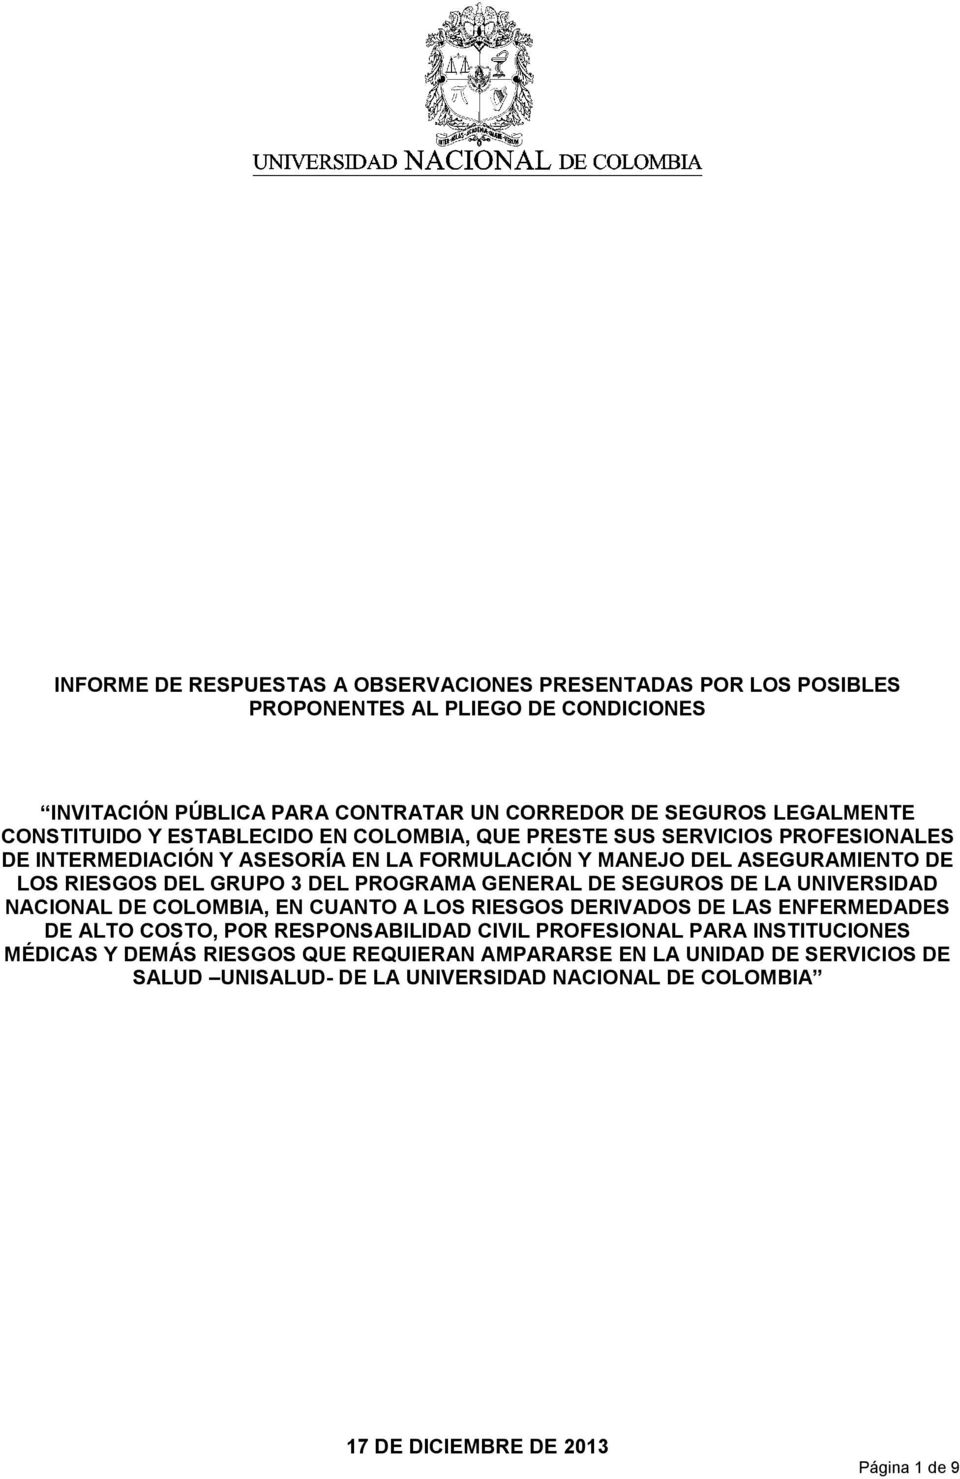 GRUPO 3 DEL PROGRAMA GENERAL DE SEGUROS DE LA UNIVERSIDAD NACIONAL DE COLOMBIA, EN CUANTO A LOS RIESGOS DERIVADOS DE LAS ENFERMEDADES DE ALTO COSTO, POR RESPONSABILIDAD